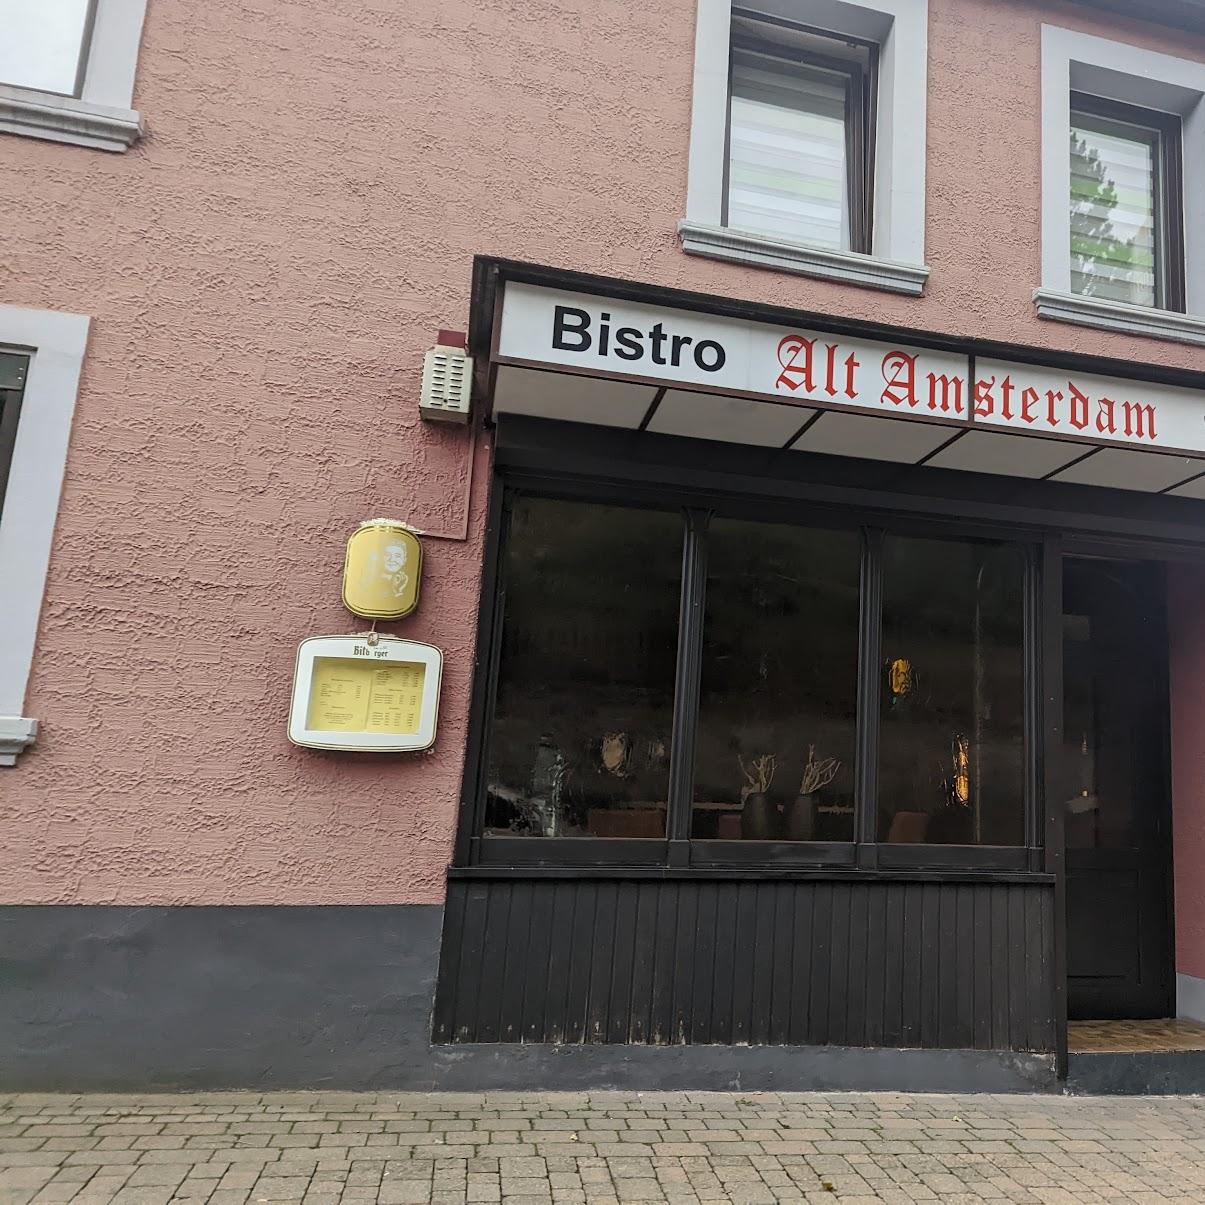 Restaurant "Bistro Alt Amsterdam" in Kell am See